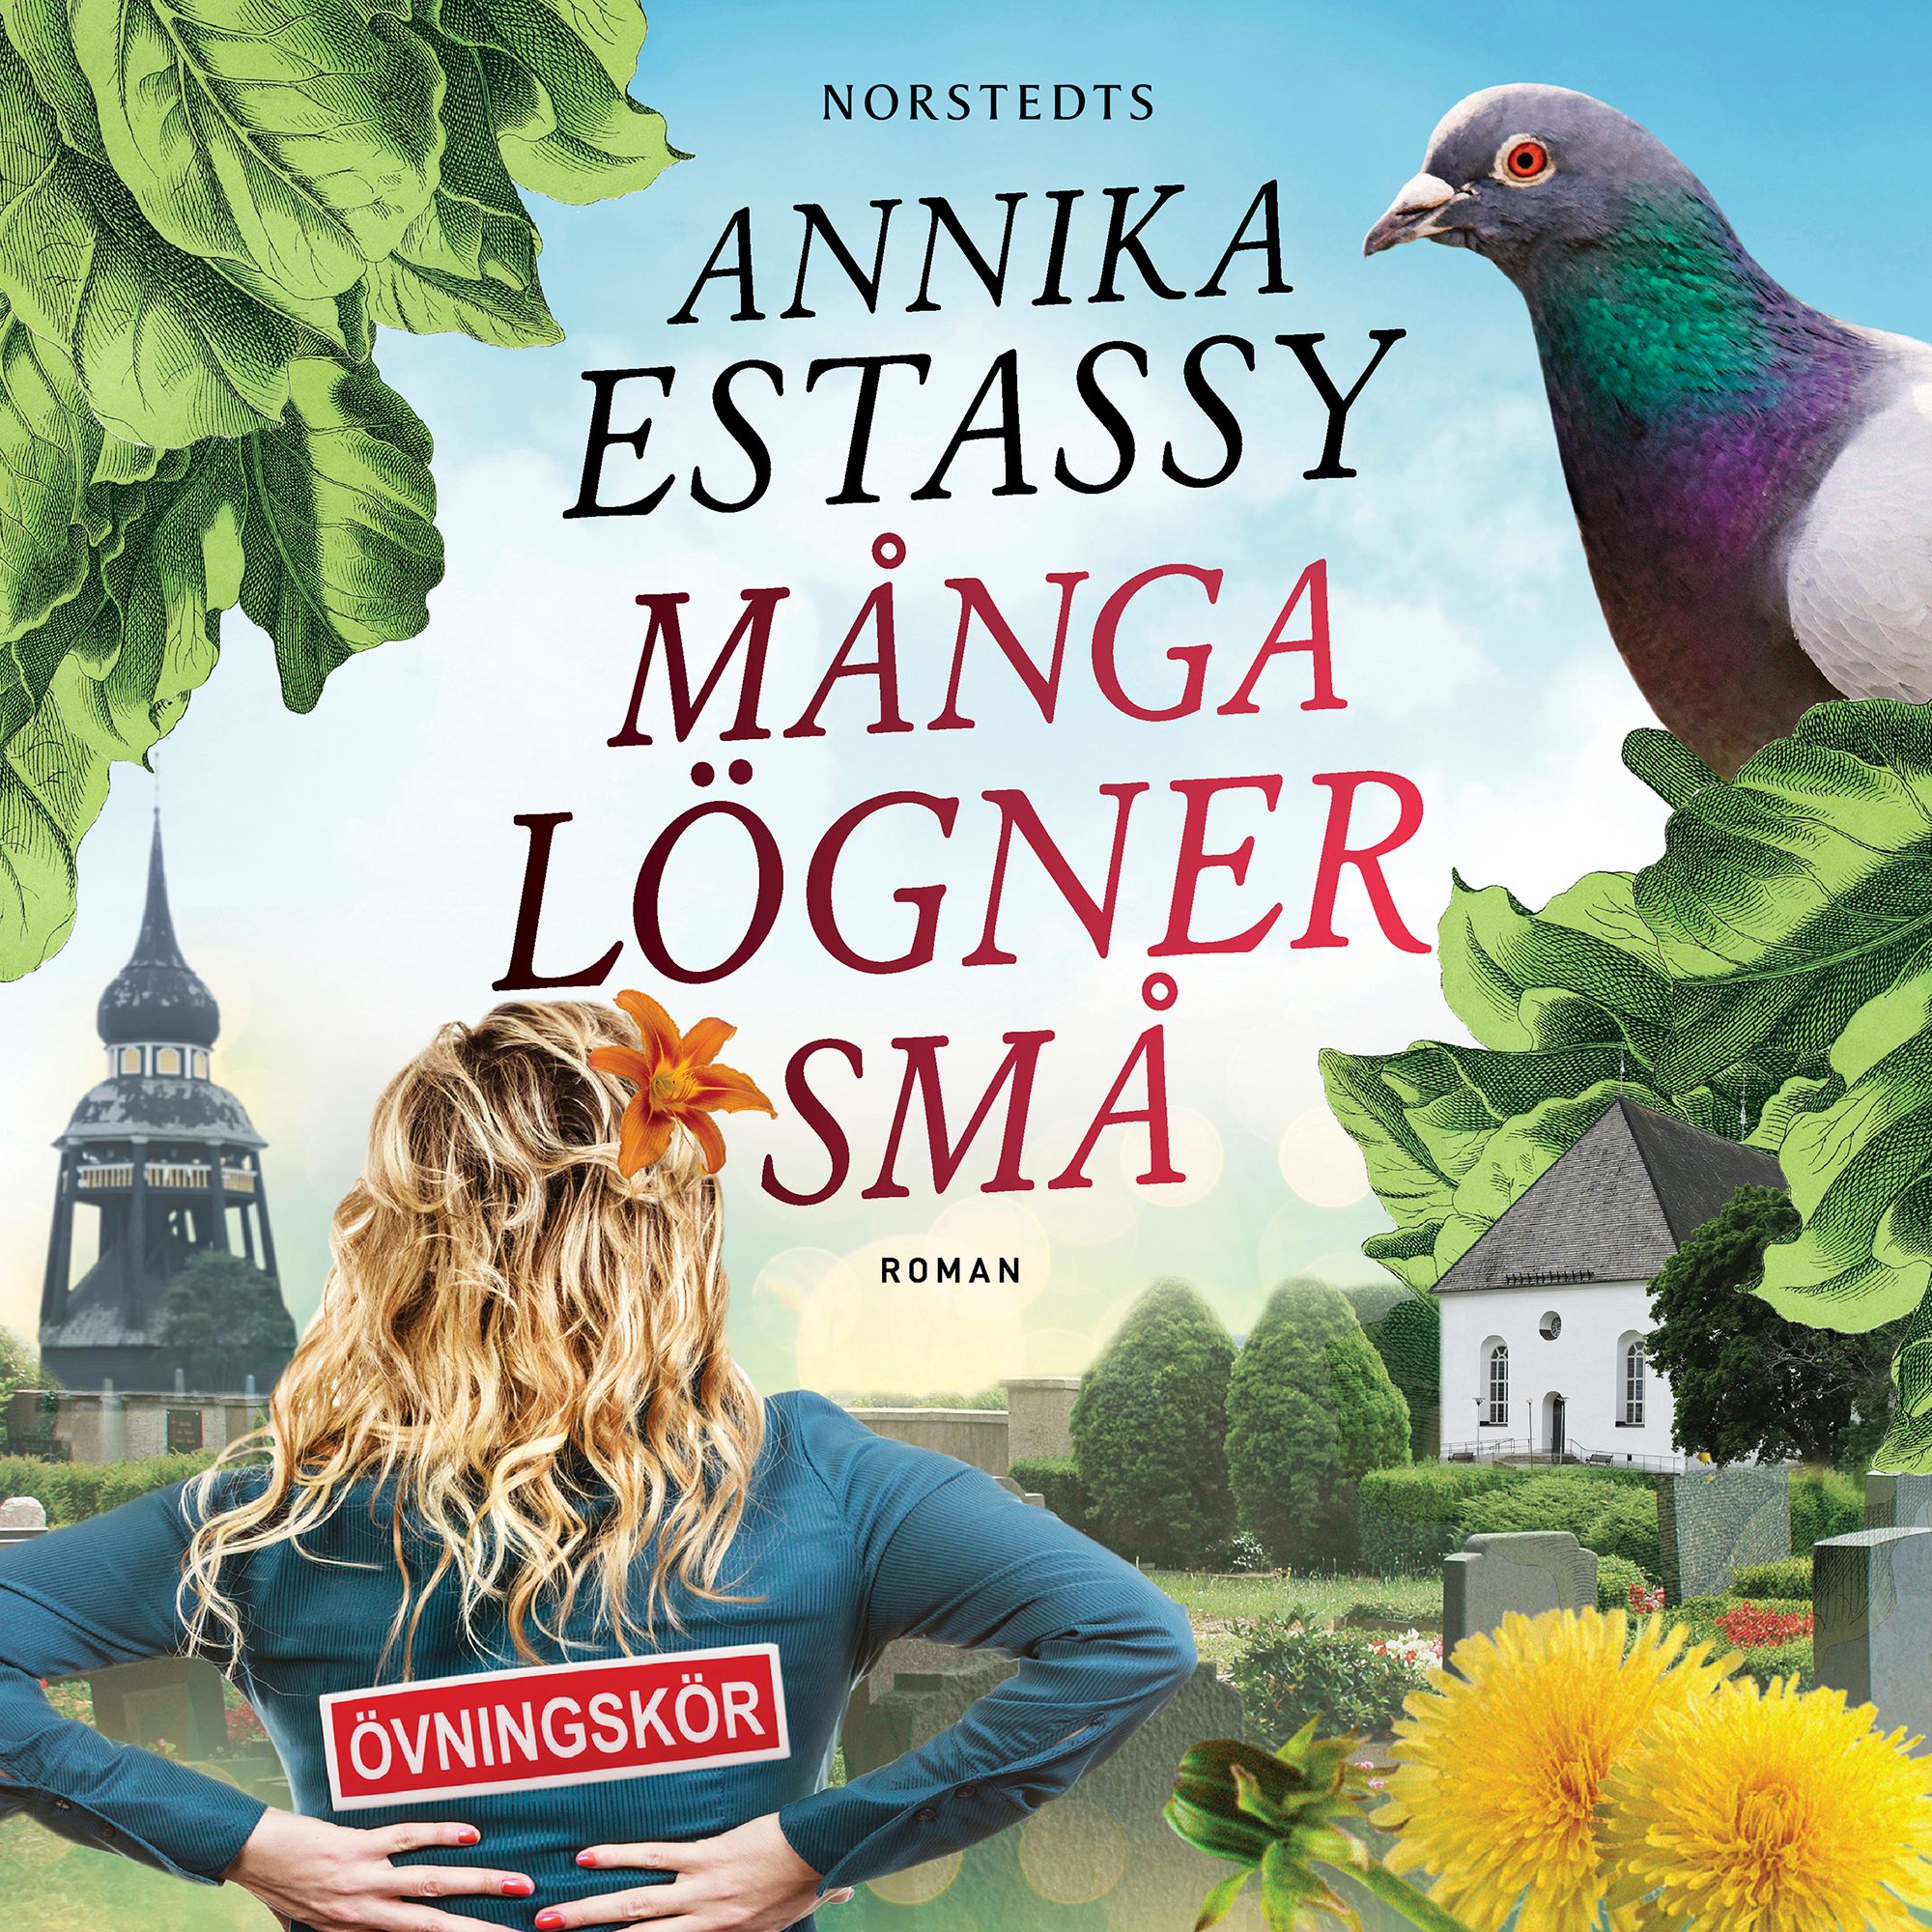 Många lögner små, ljudbok av Annika Estassy